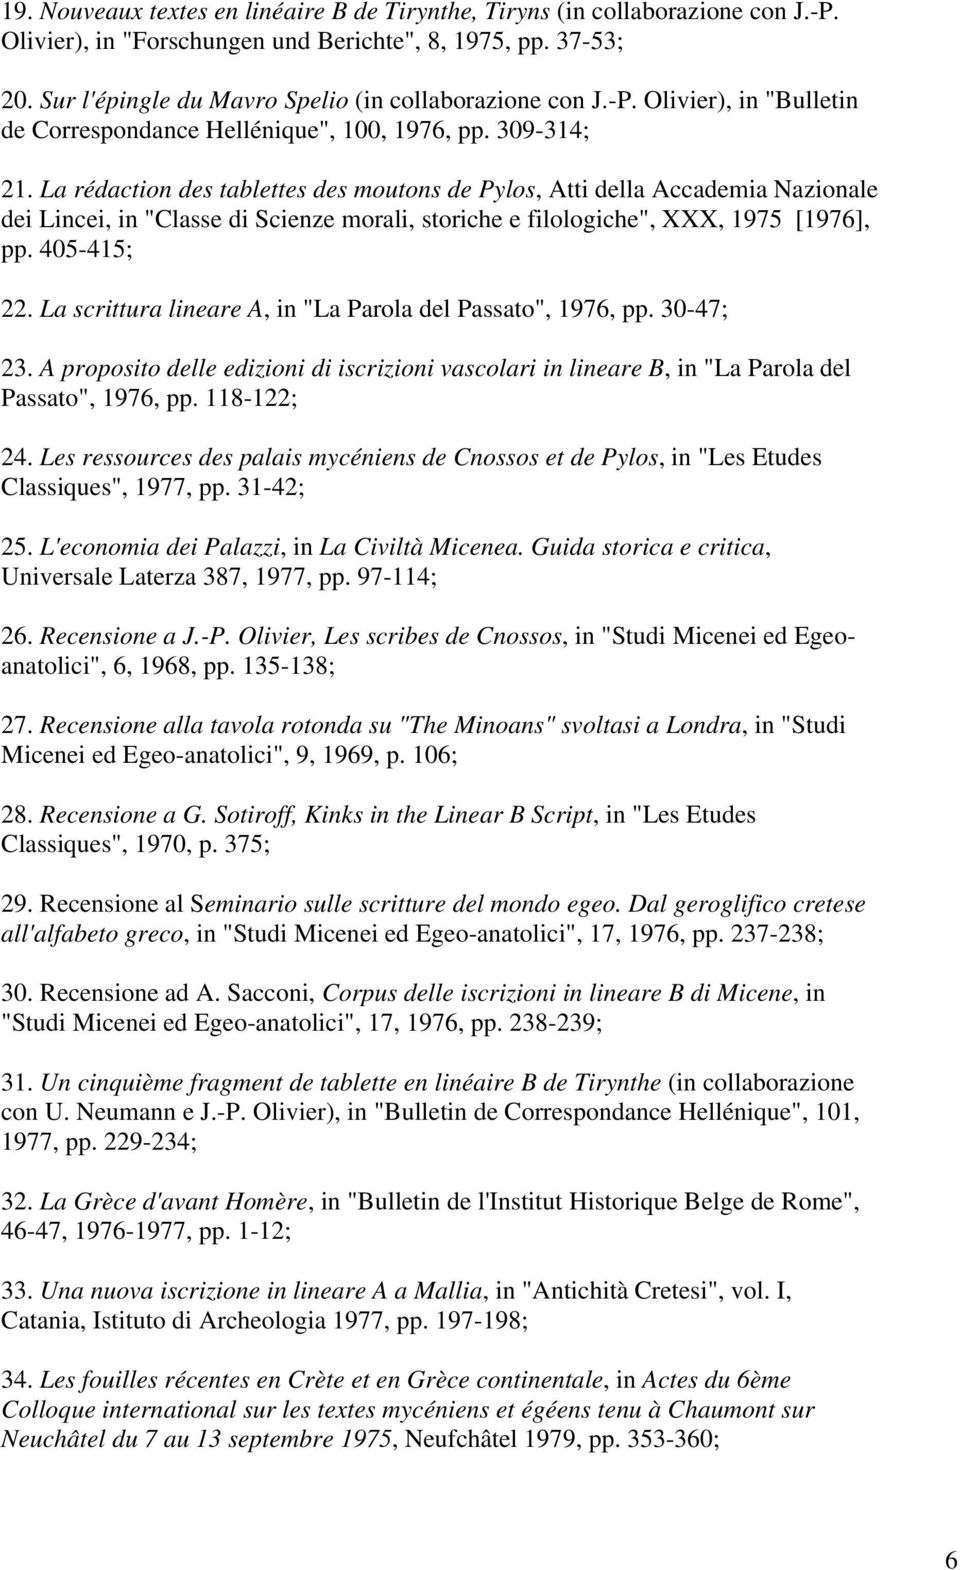 La rédaction des tablettes des moutons de Pylos, Atti della Accademia Nazionale dei Lincei, in "Classe di Scienze morali, storiche e filologiche", XXX, 1975 [1976], pp. 405-415; 22.